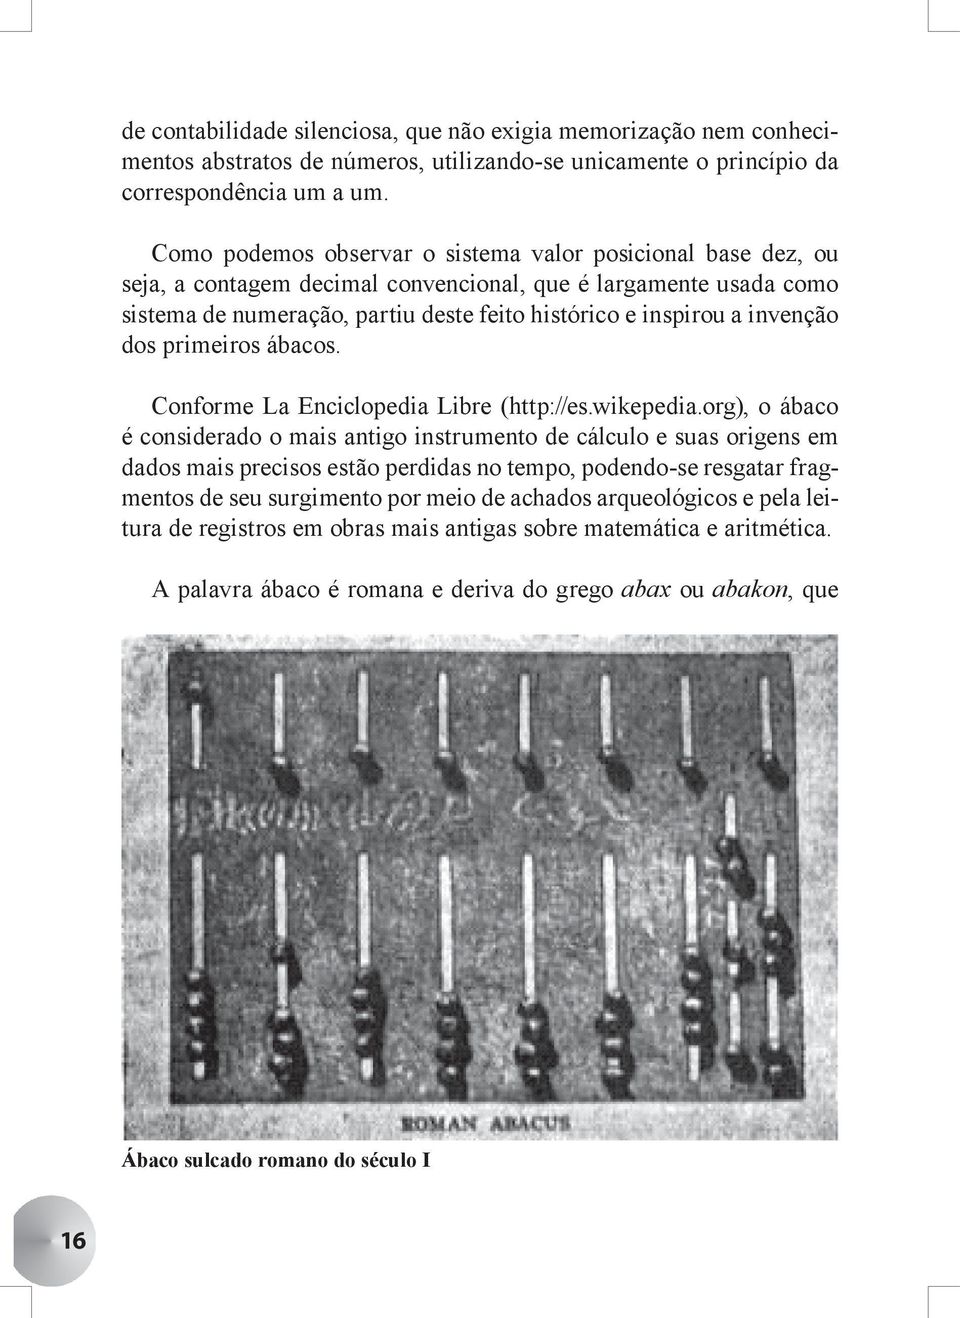 invenção dos primeiros ábacos. Conforme La Enciclopedia Libre (http://es.wikepedia.